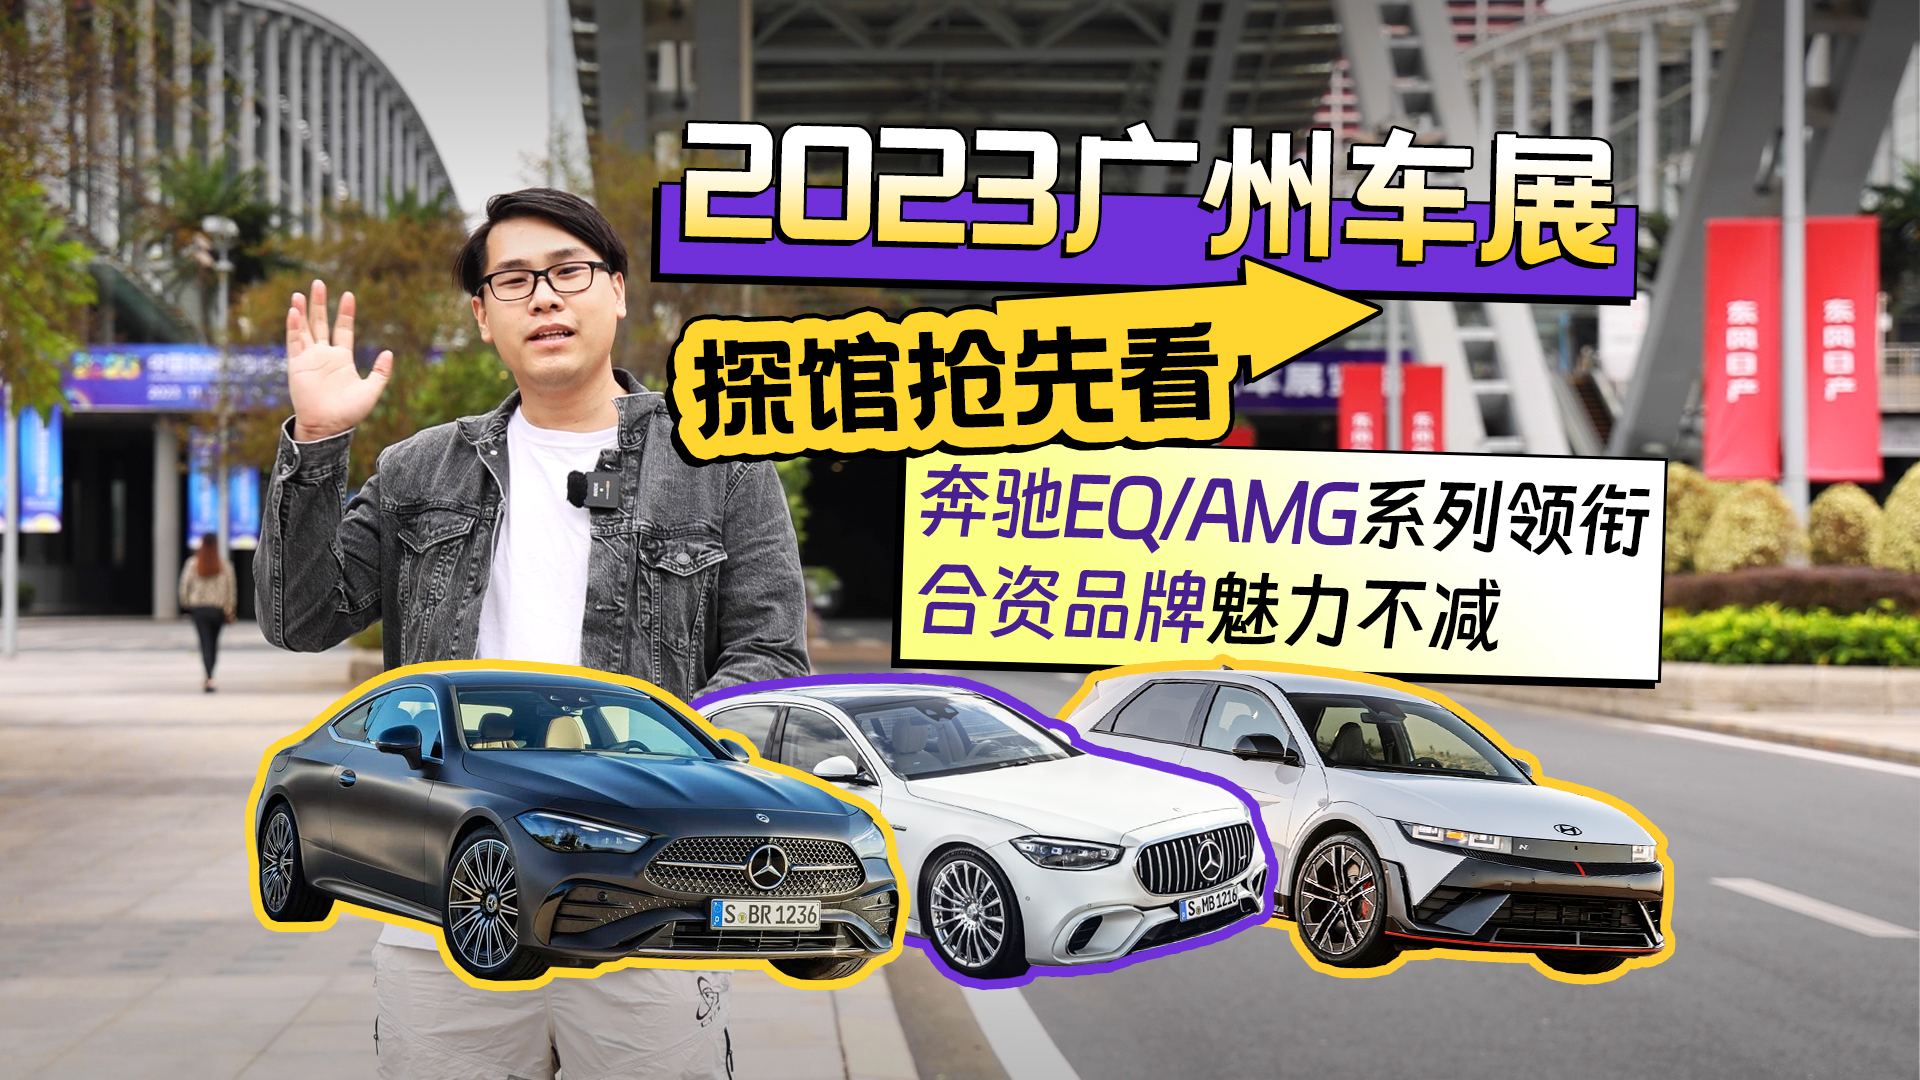 2023广州车展探馆抢先看 奔驰EQ/AMG系列领衔 合资品牌魅力不减视频